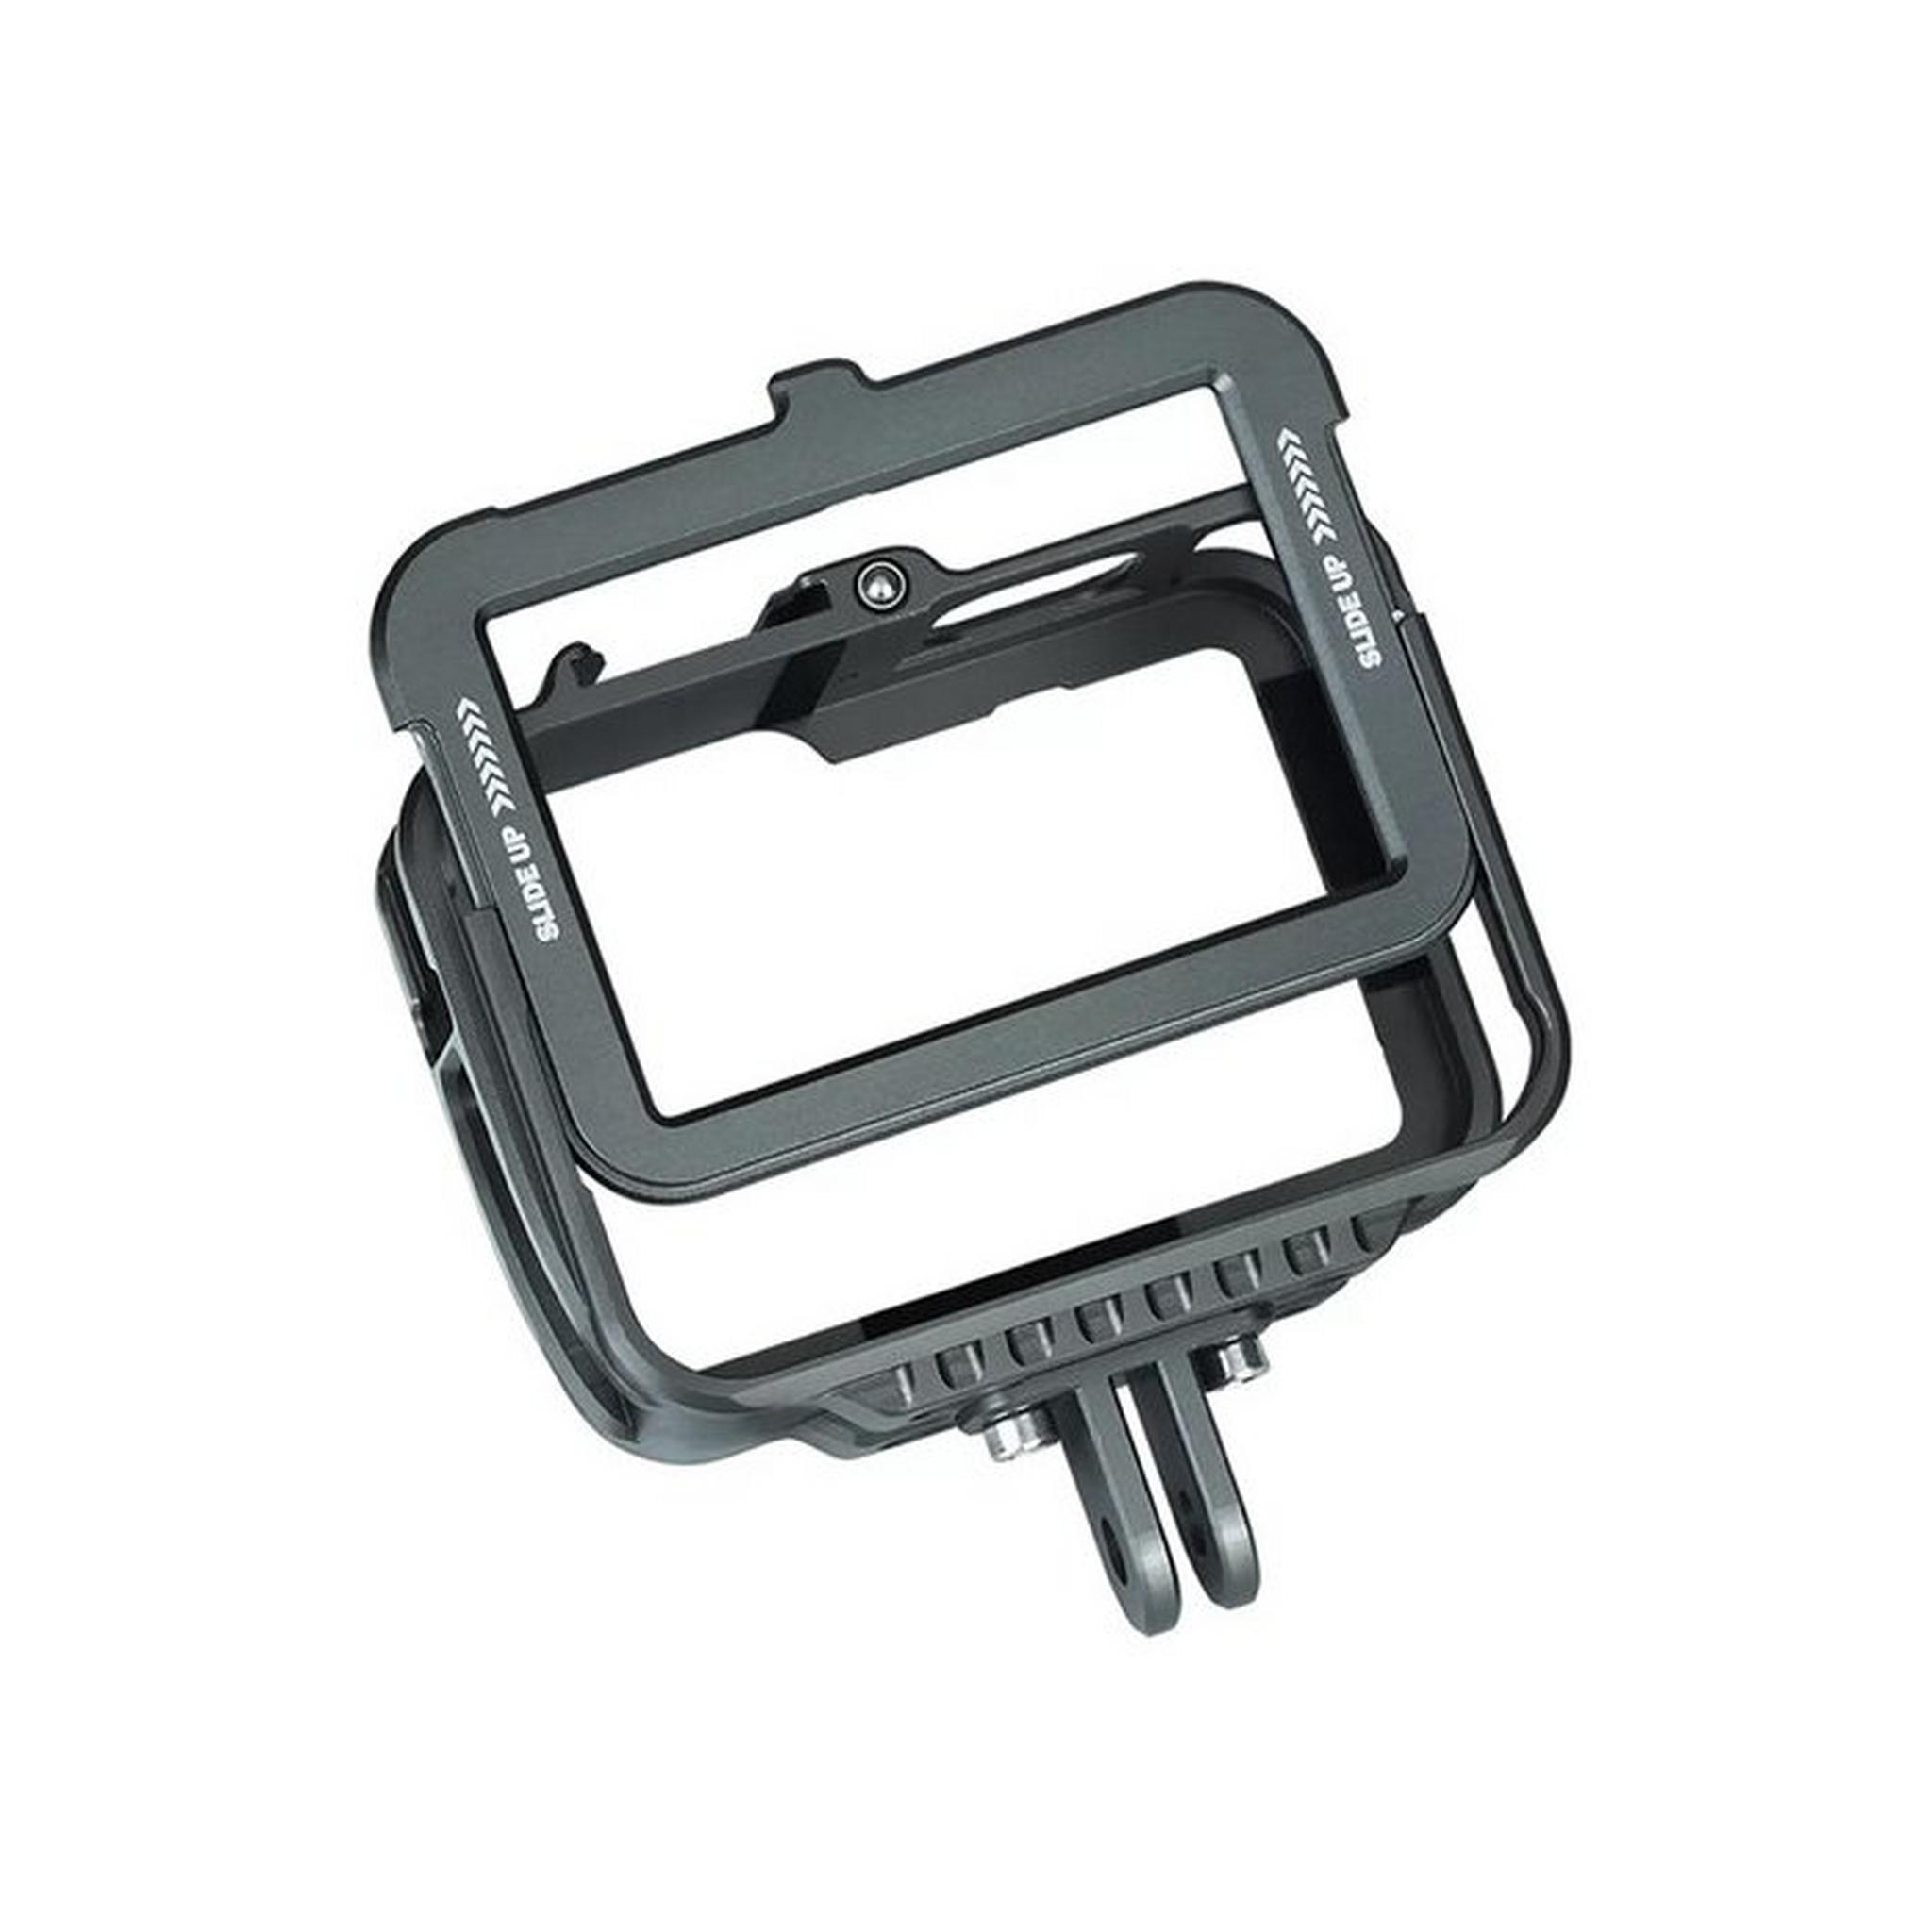 TELESIN Aluminum Alloy Frame Case for GoPro Hero10/9, GP-FMS-901 - Black